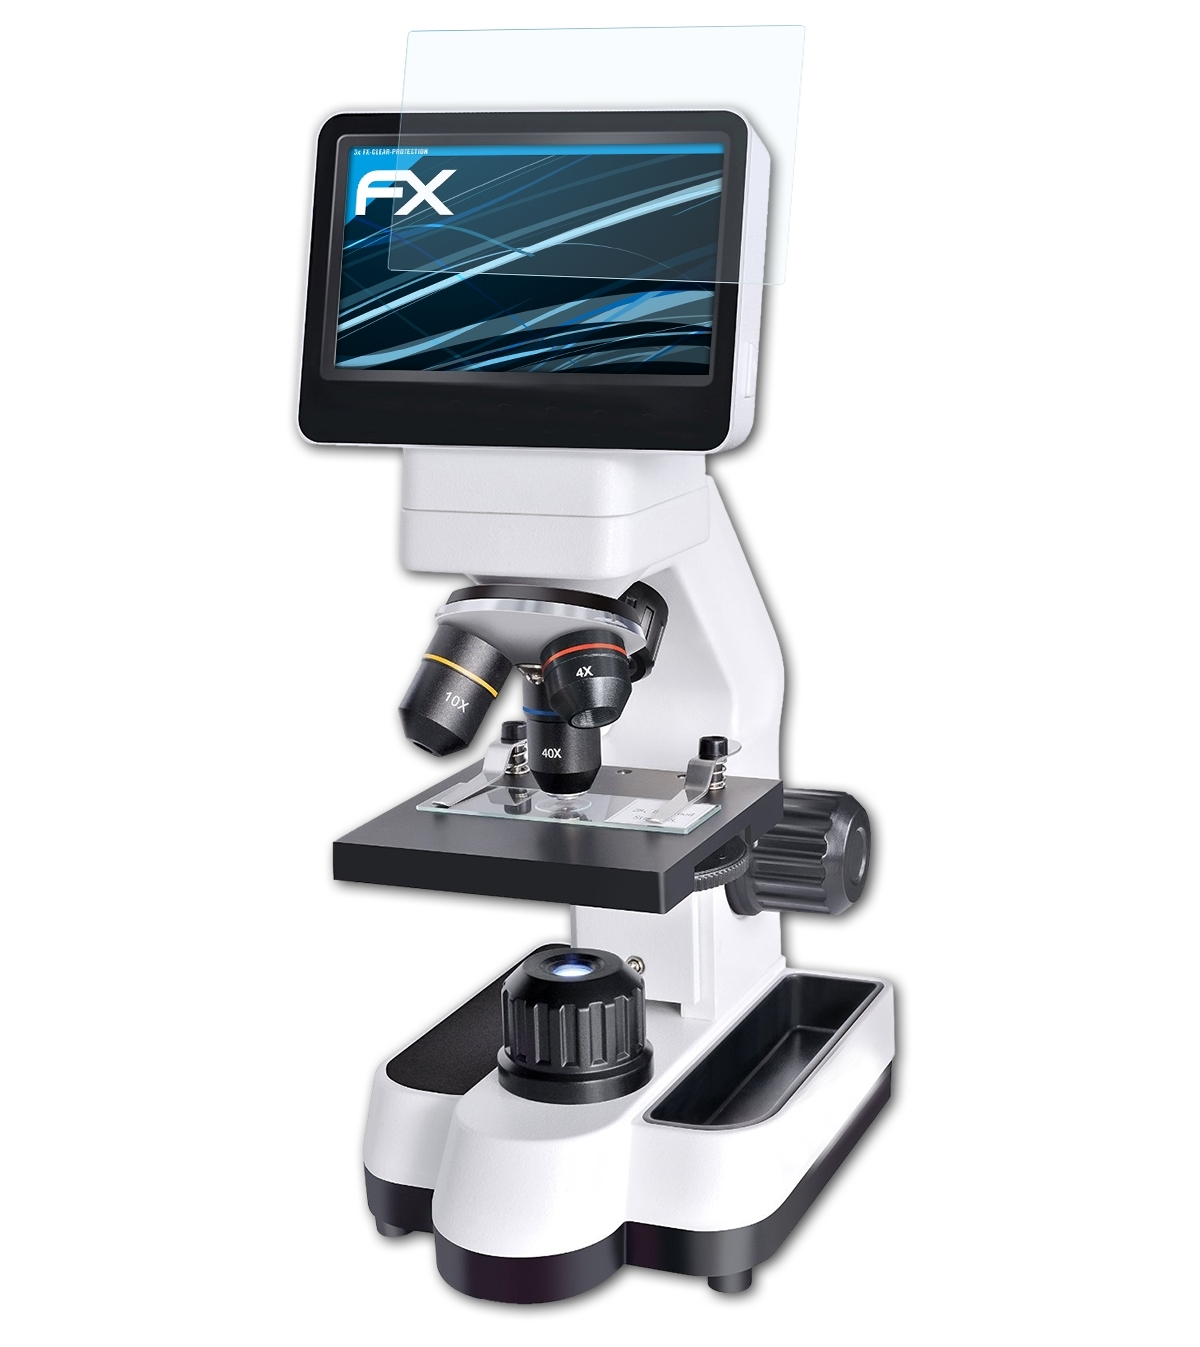 ATFOLIX 3x FX-Clear Displayschutz(für (4.3 LCD-Microscope Bresser Touch Inch)) 40-1400x